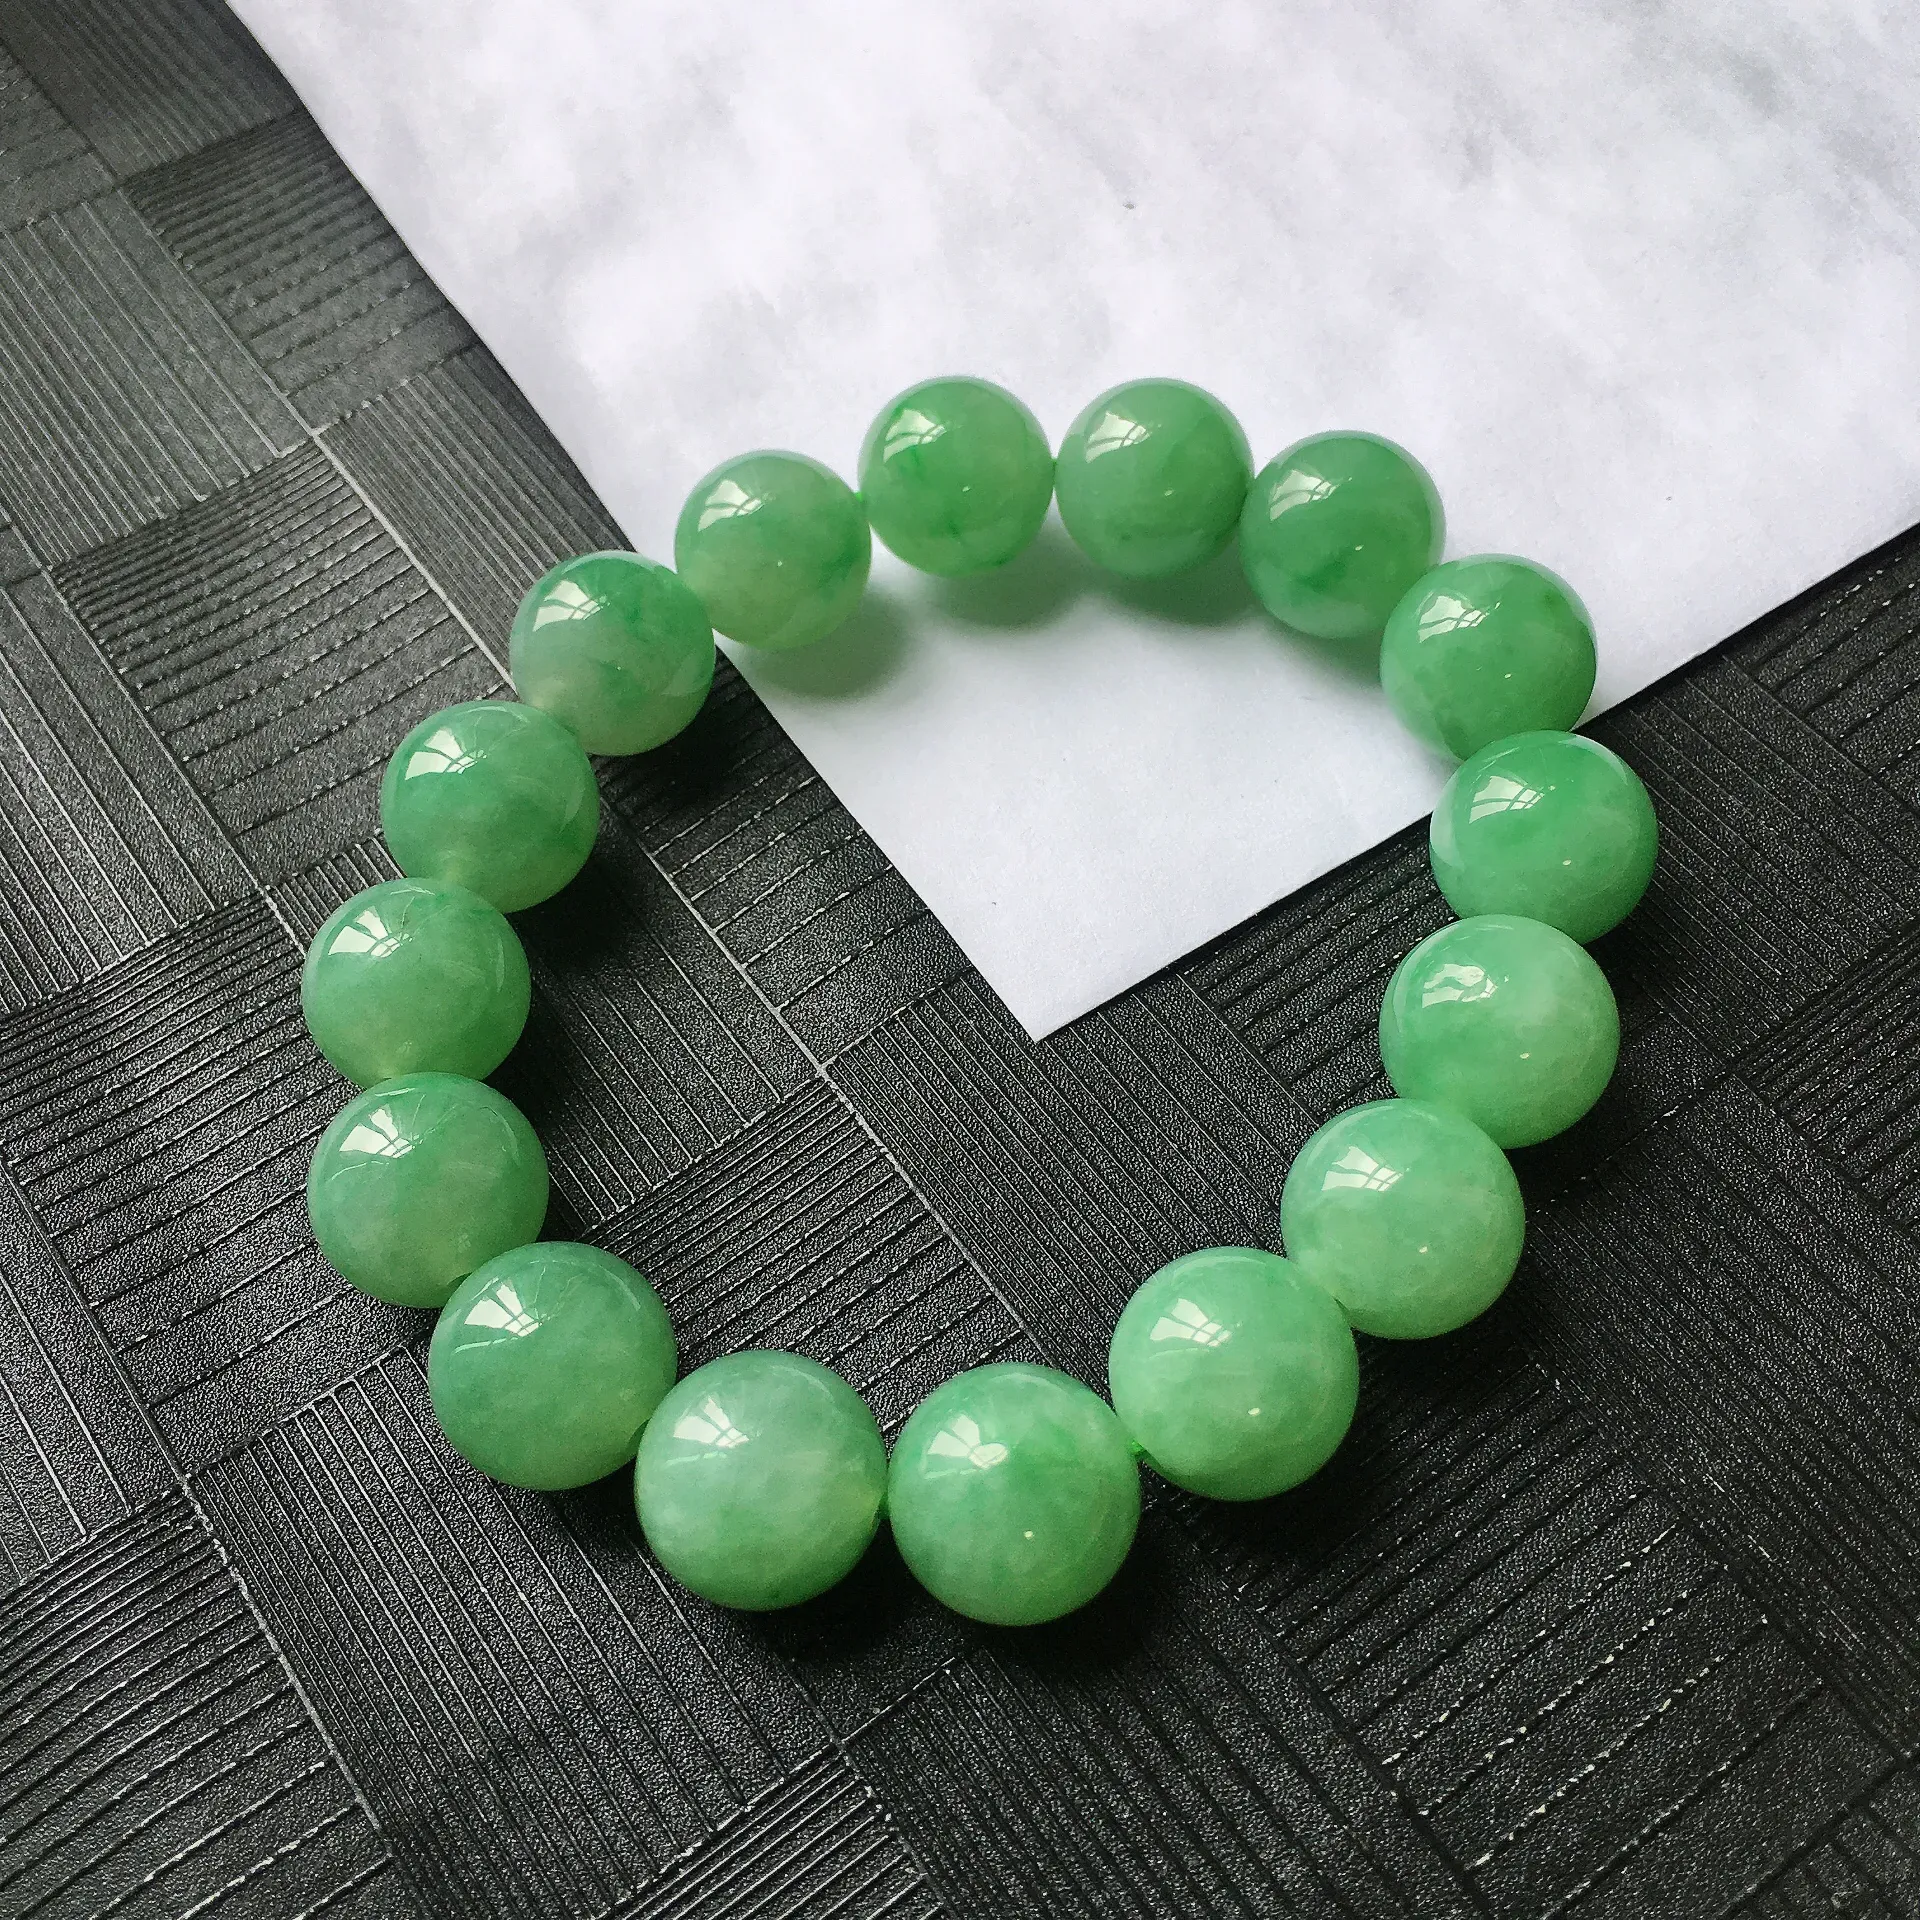 天然A货翡翠满绿圆珠手链，种水好玉质细腻温润，颜色漂亮。